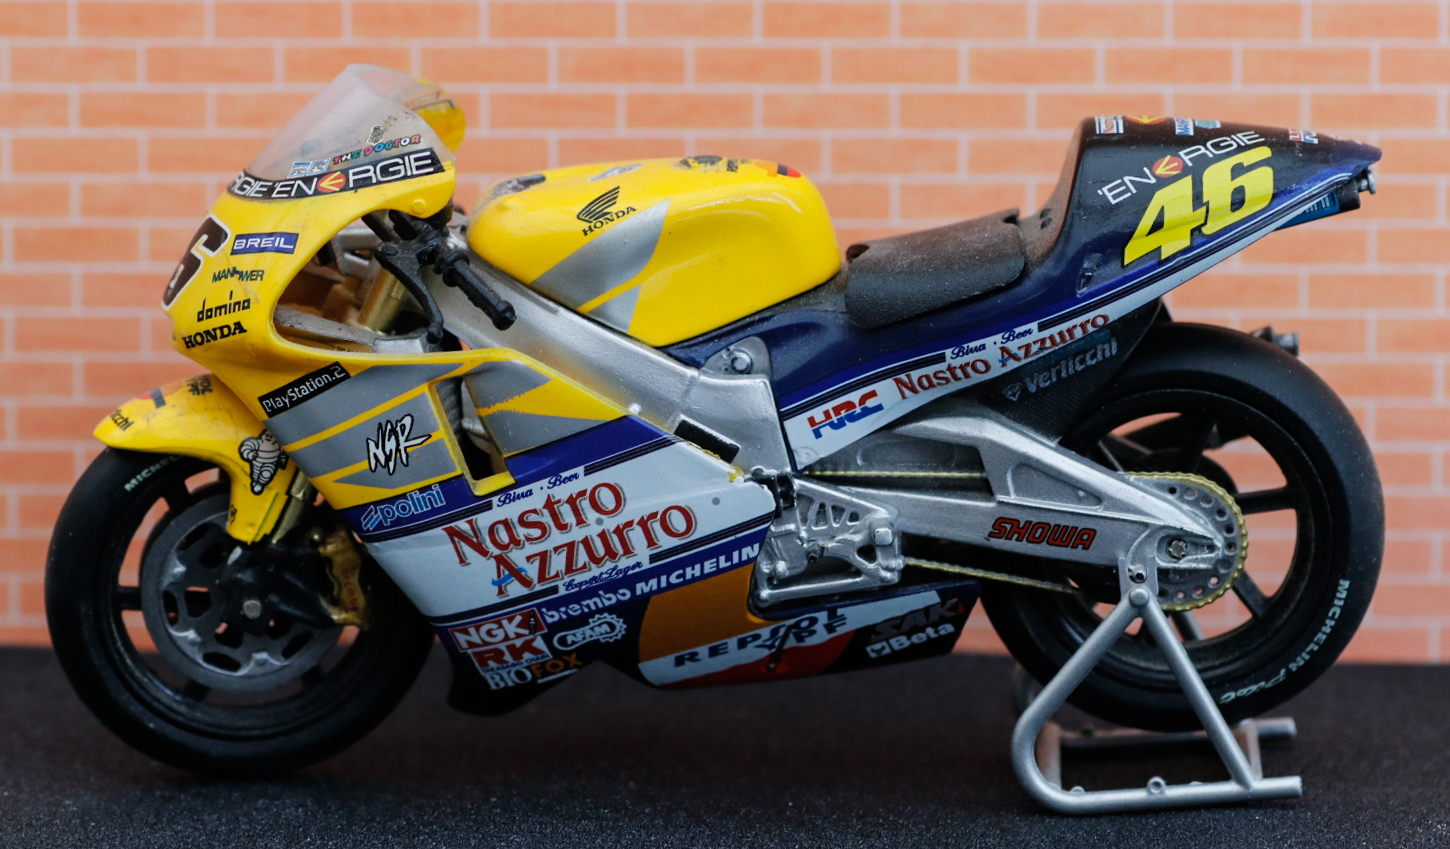 Leo Models Honda NSR500 World Champion 2001